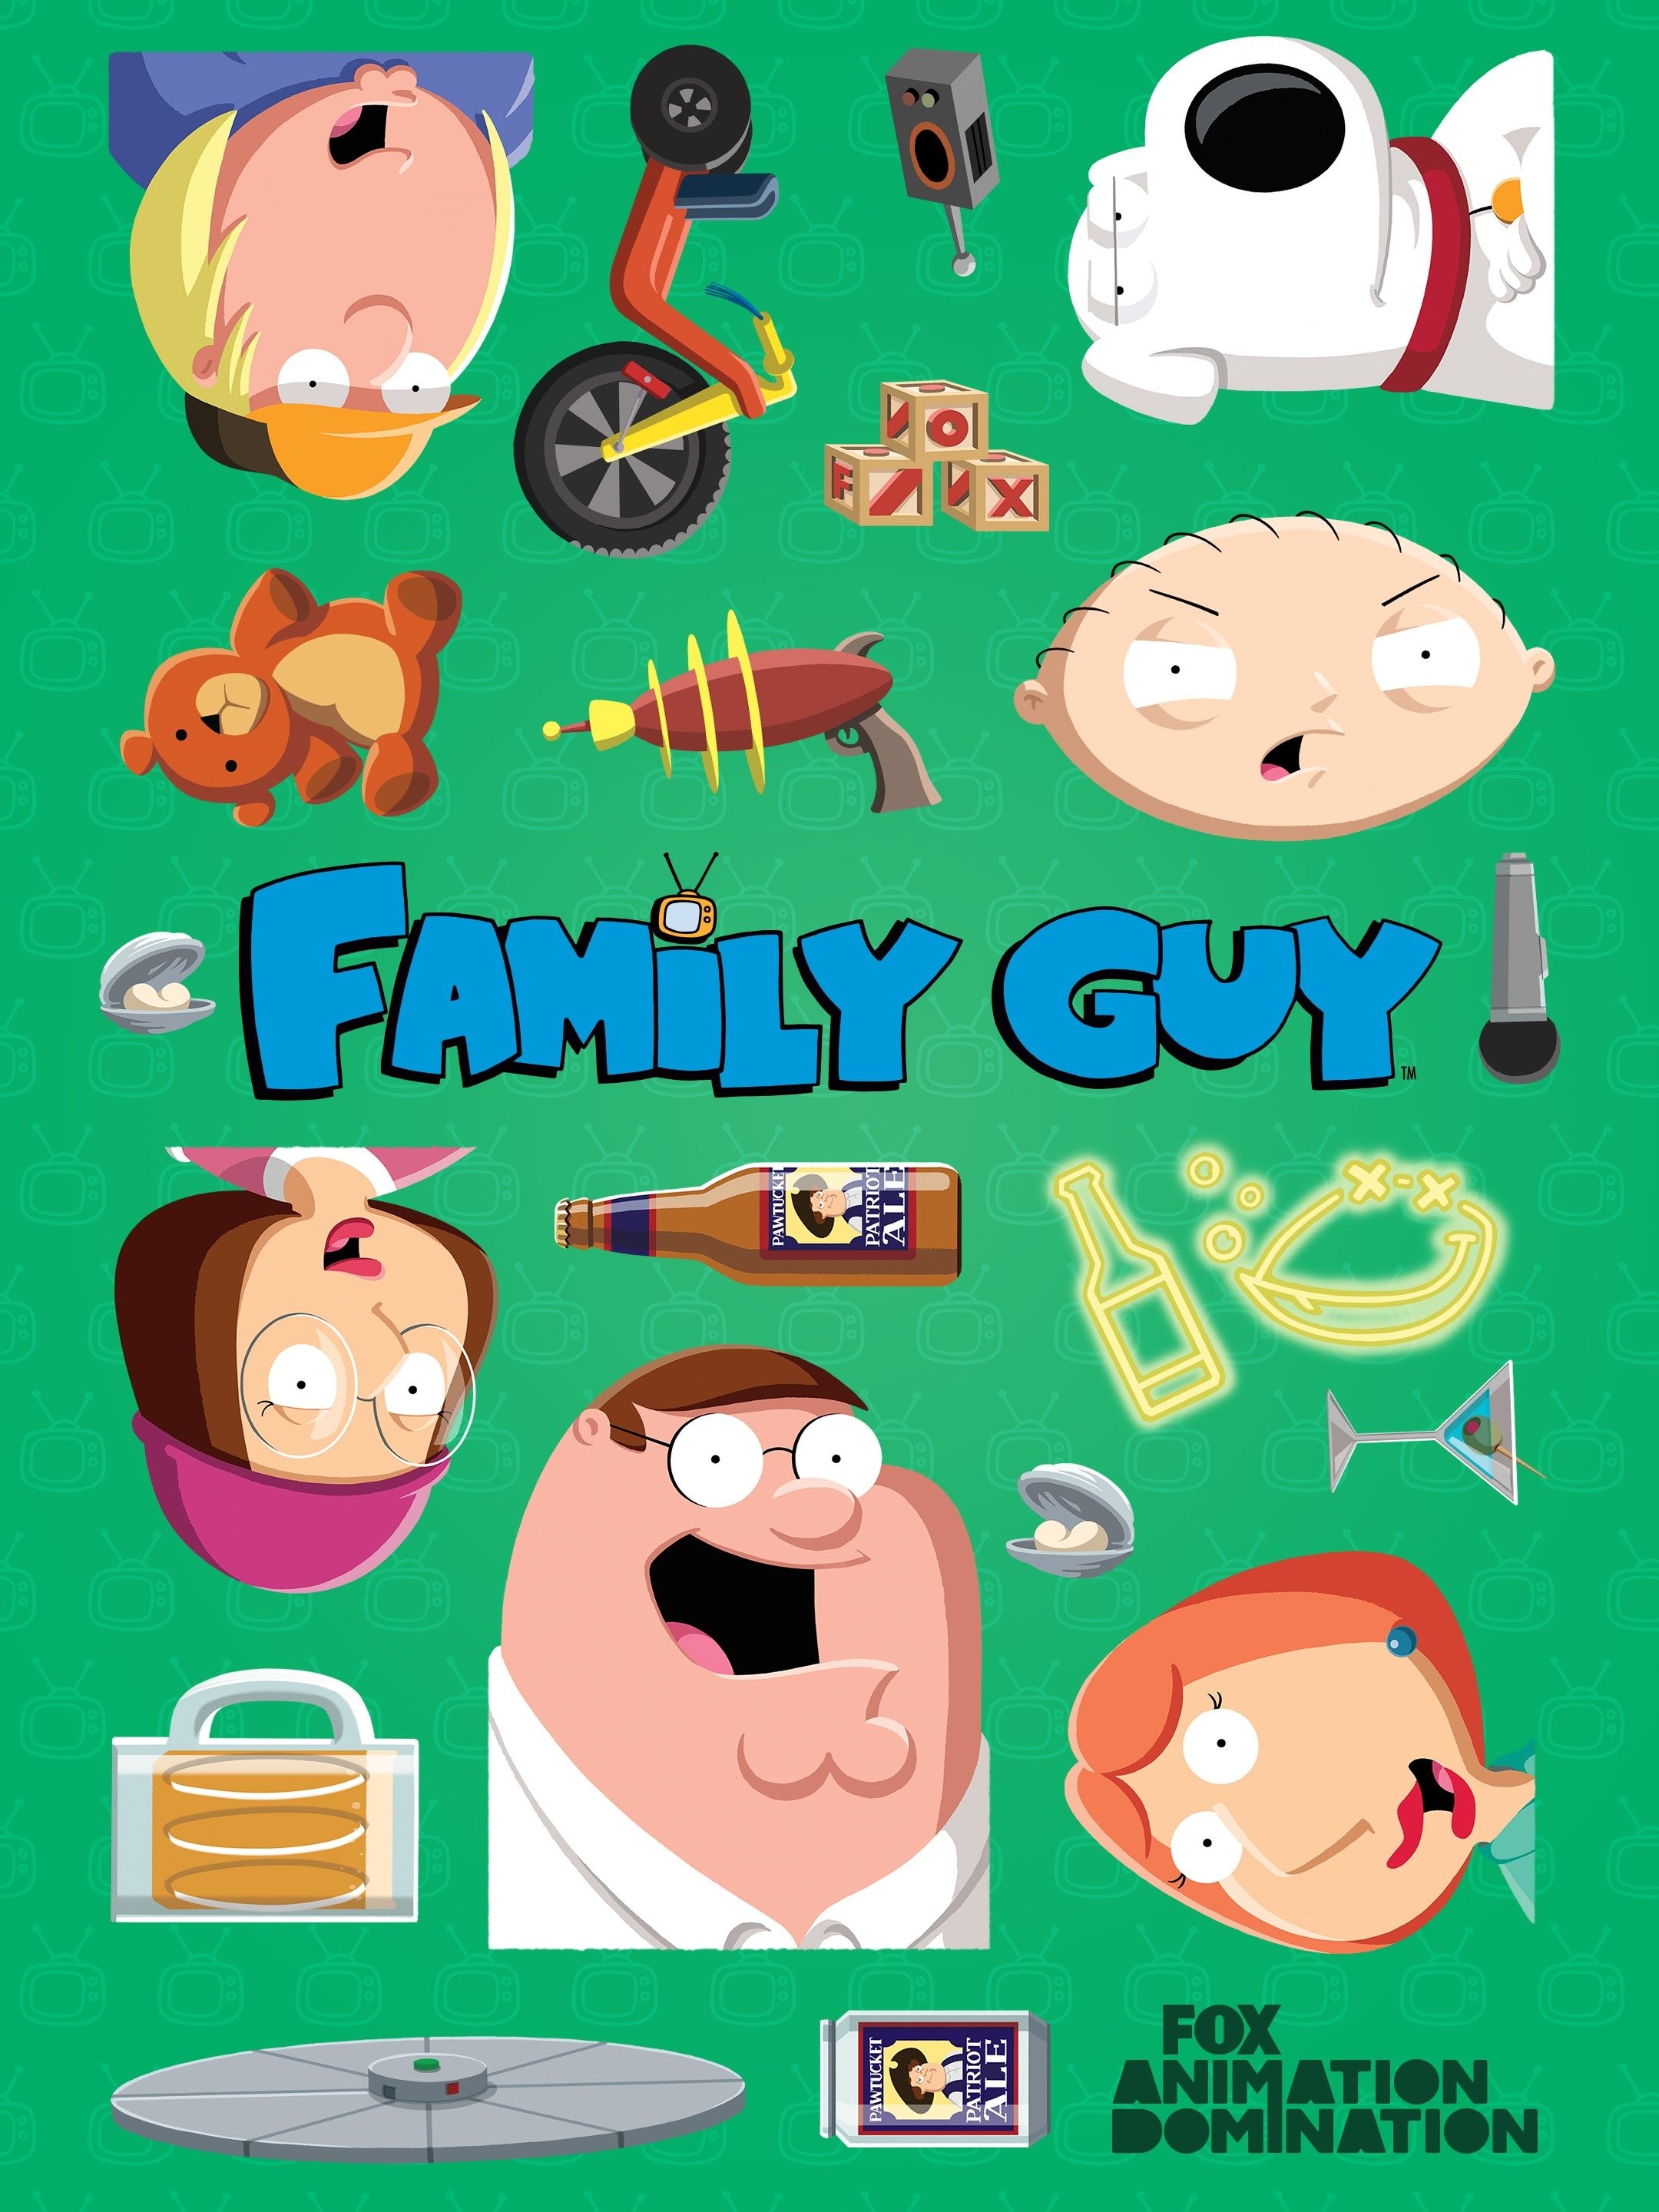 Fox Sets Family Guy Season 22 Premiere for October 1st : r/familyguy